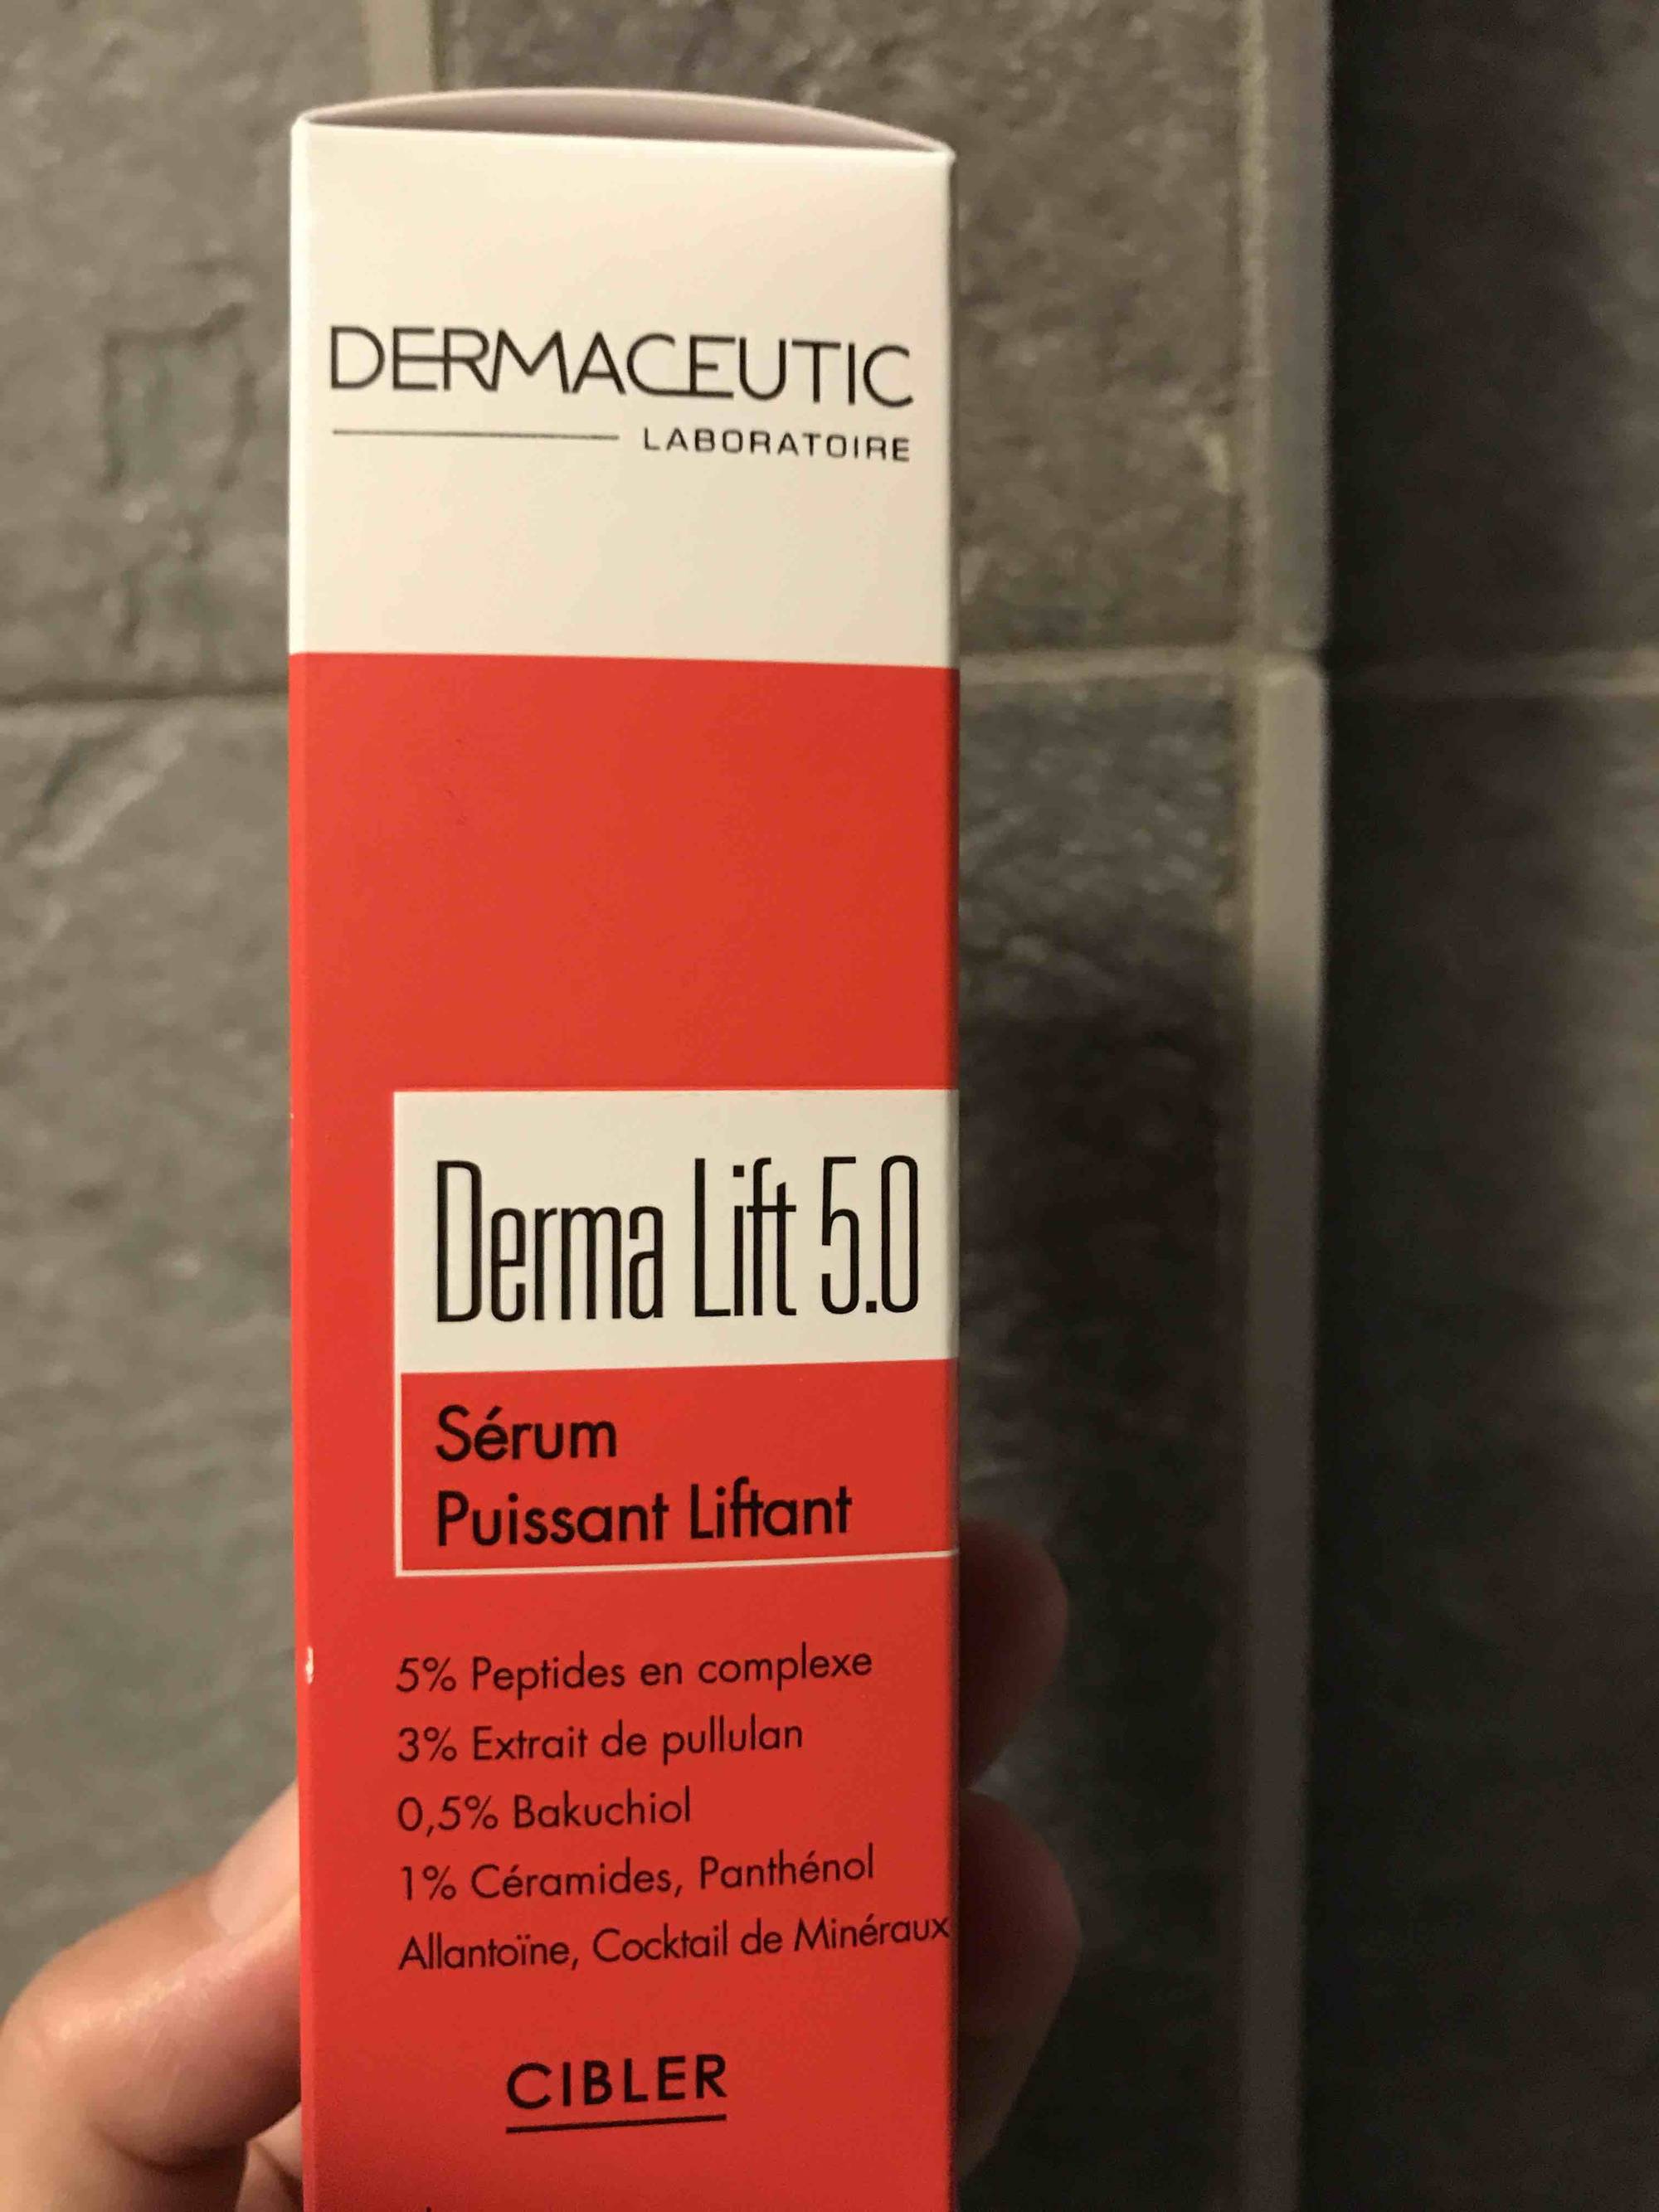 DERMACEUTIC - Derma lift 5.0 - Sérum puissant liftant